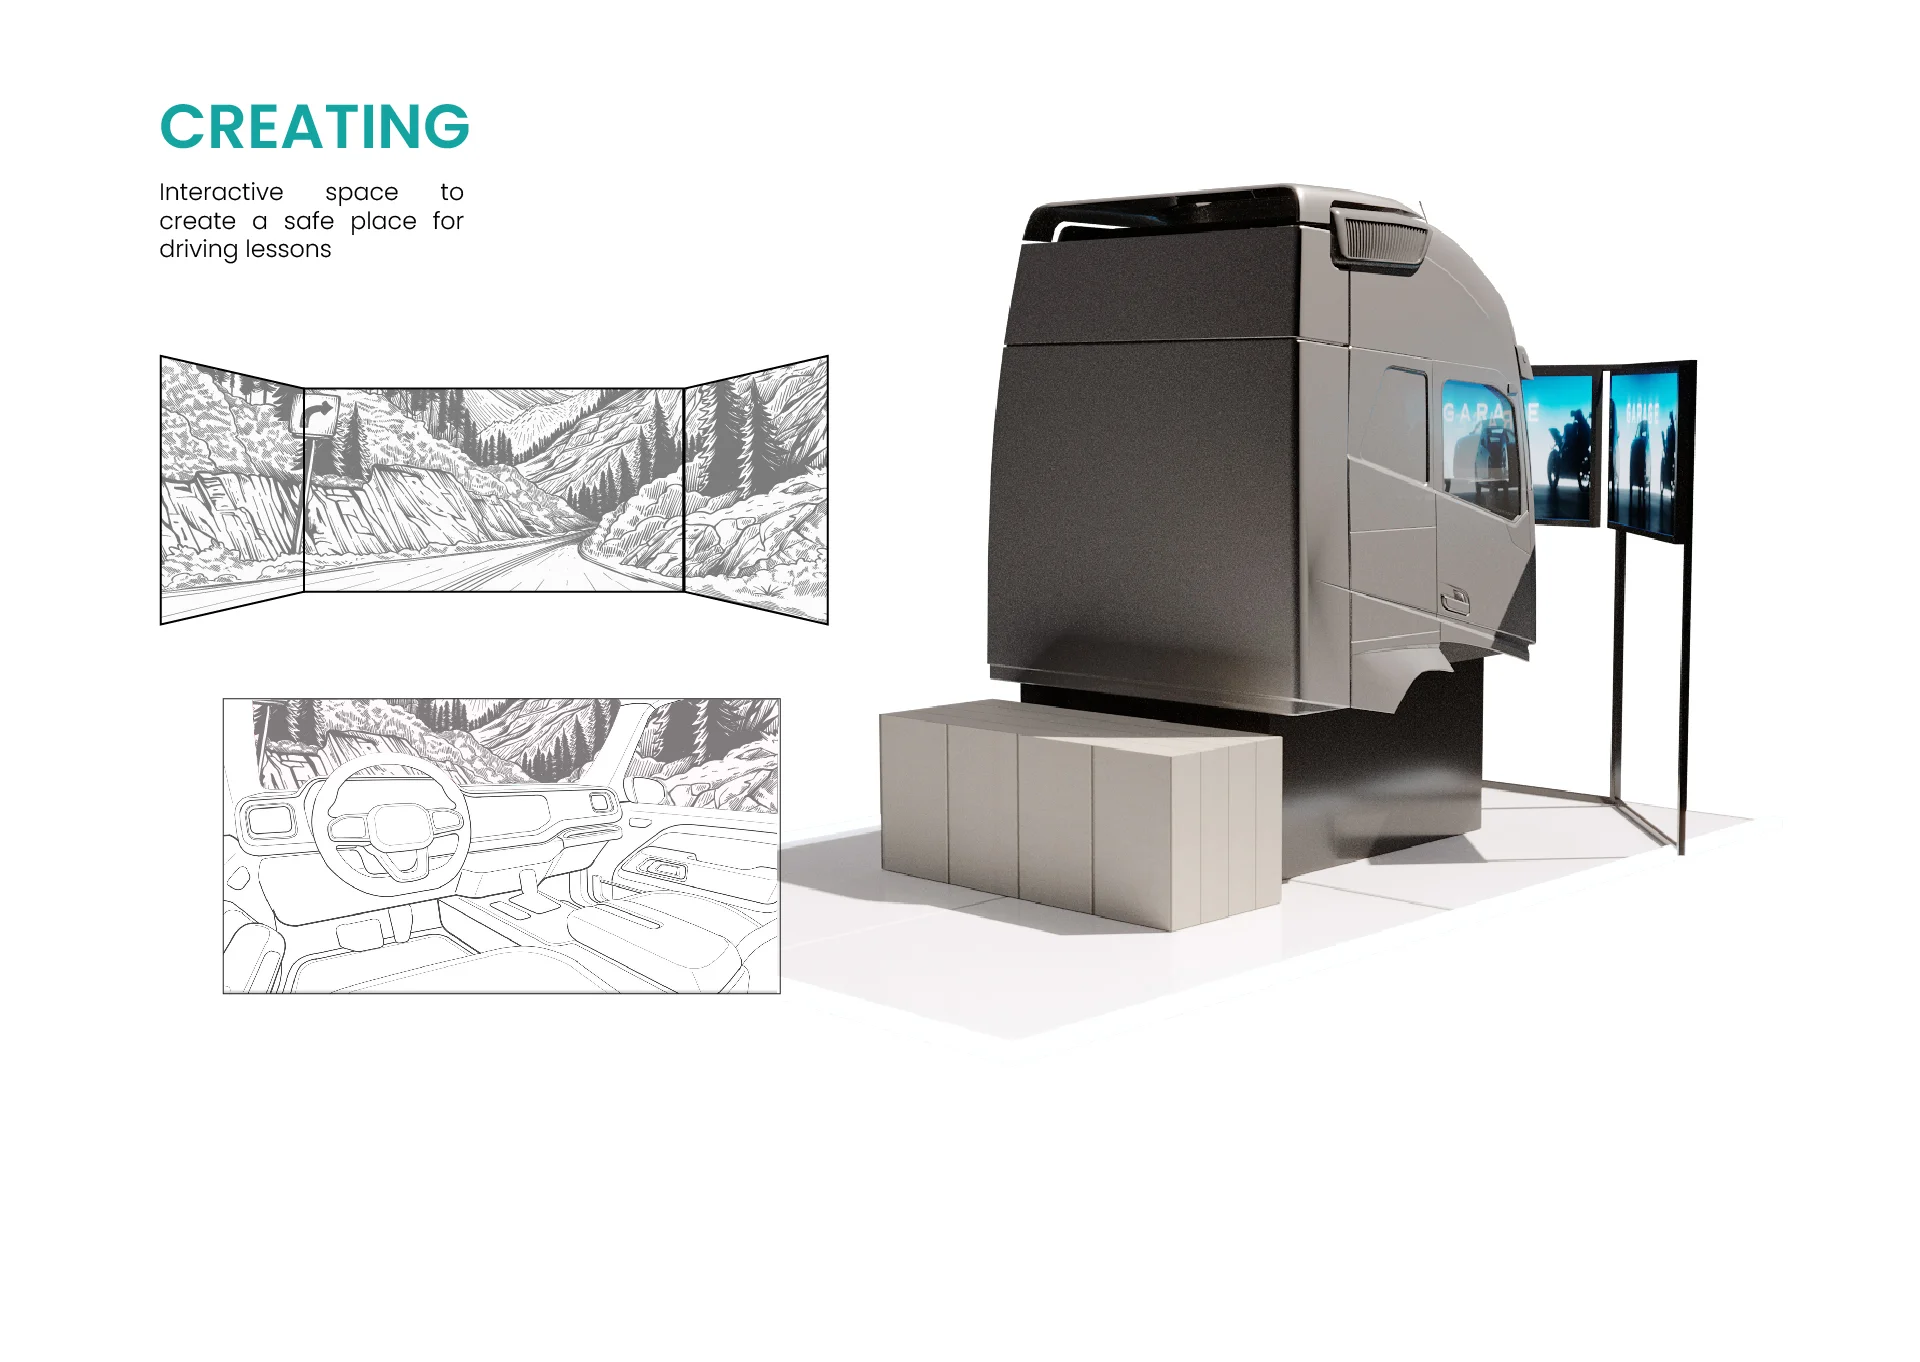   12  طراحی غرفه و غرفه سازی نمایشگاهی نمایشگاه خودرو شرکت غرفه سازی آمیتیس 